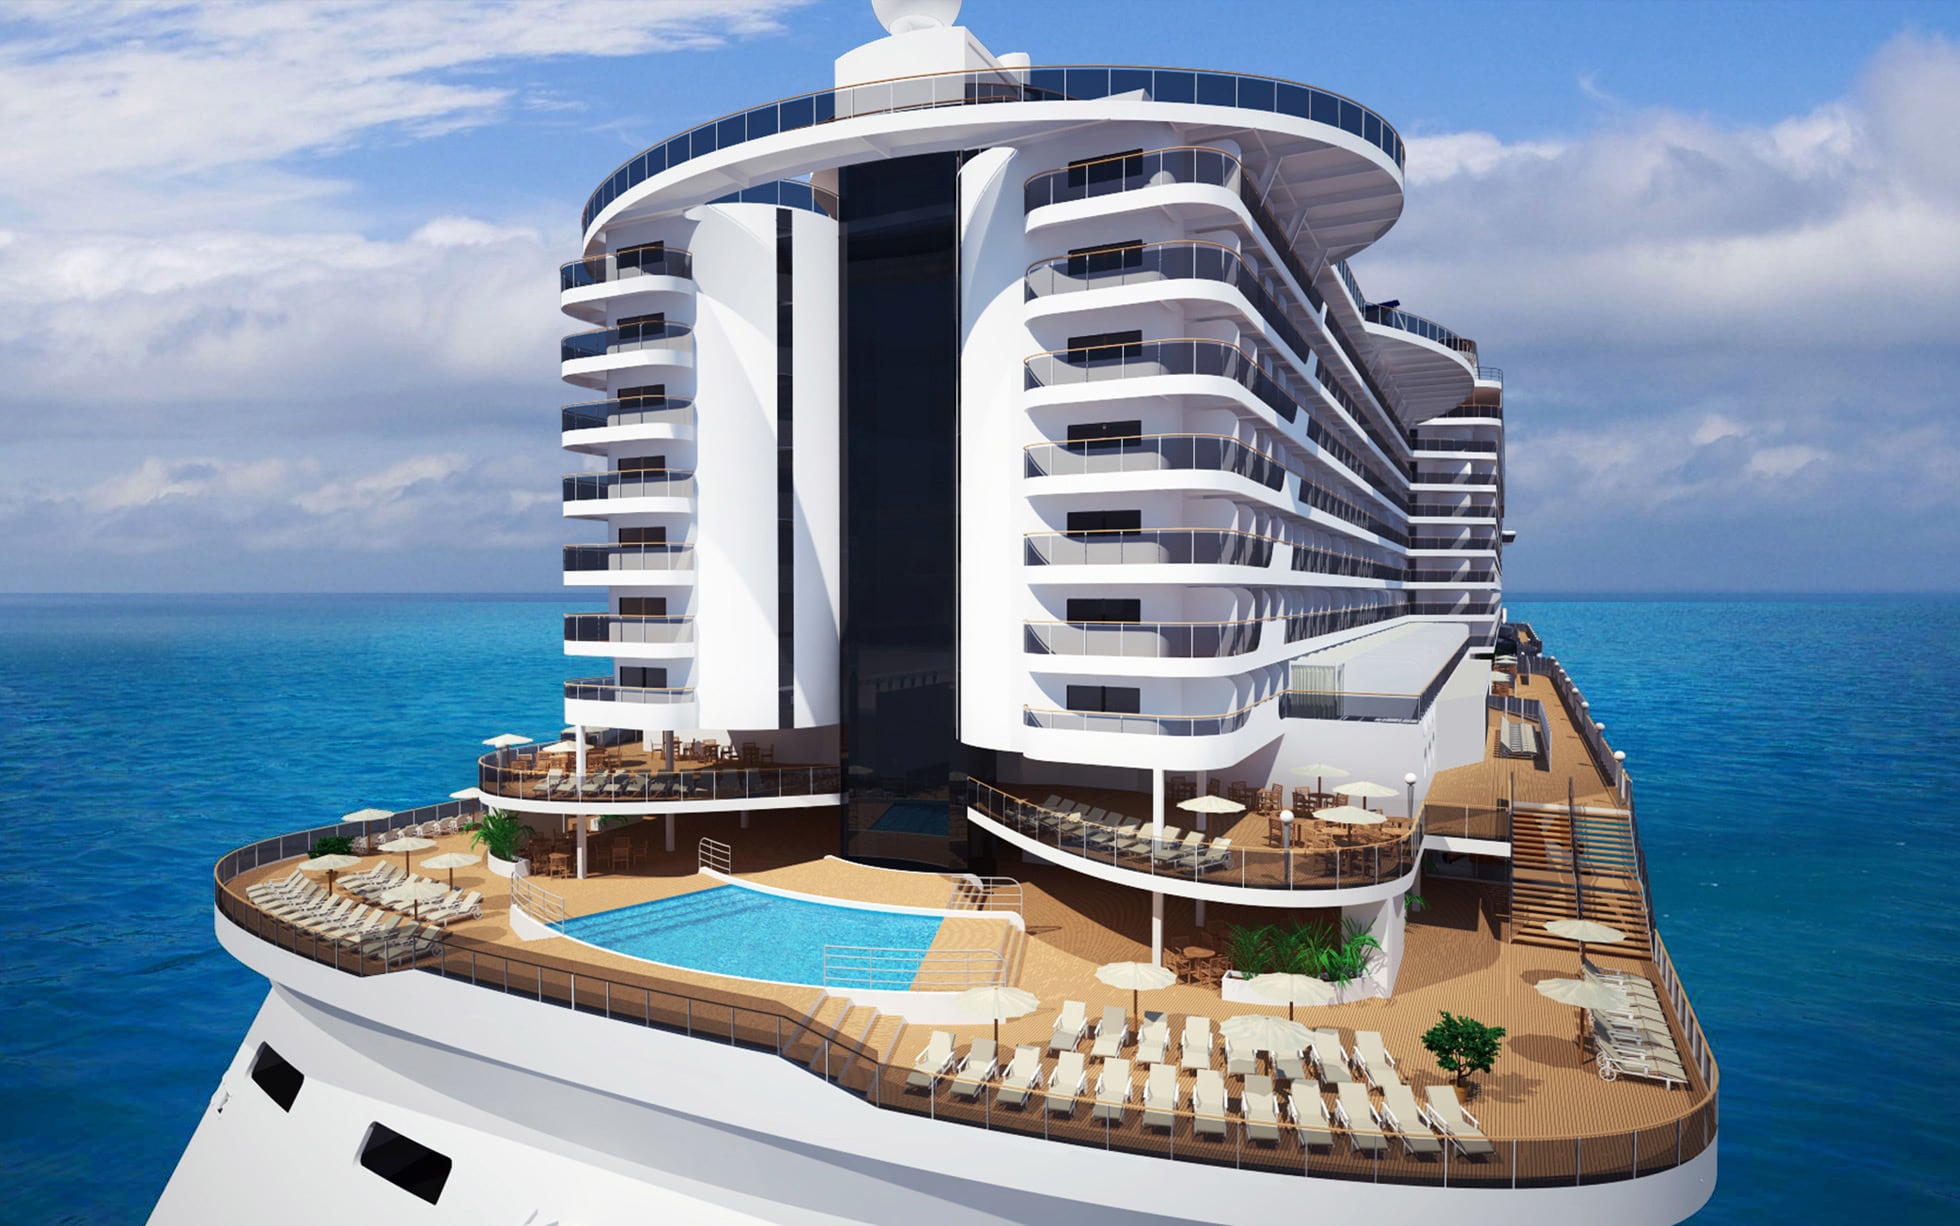 8 Best Luxury Cruise Ships